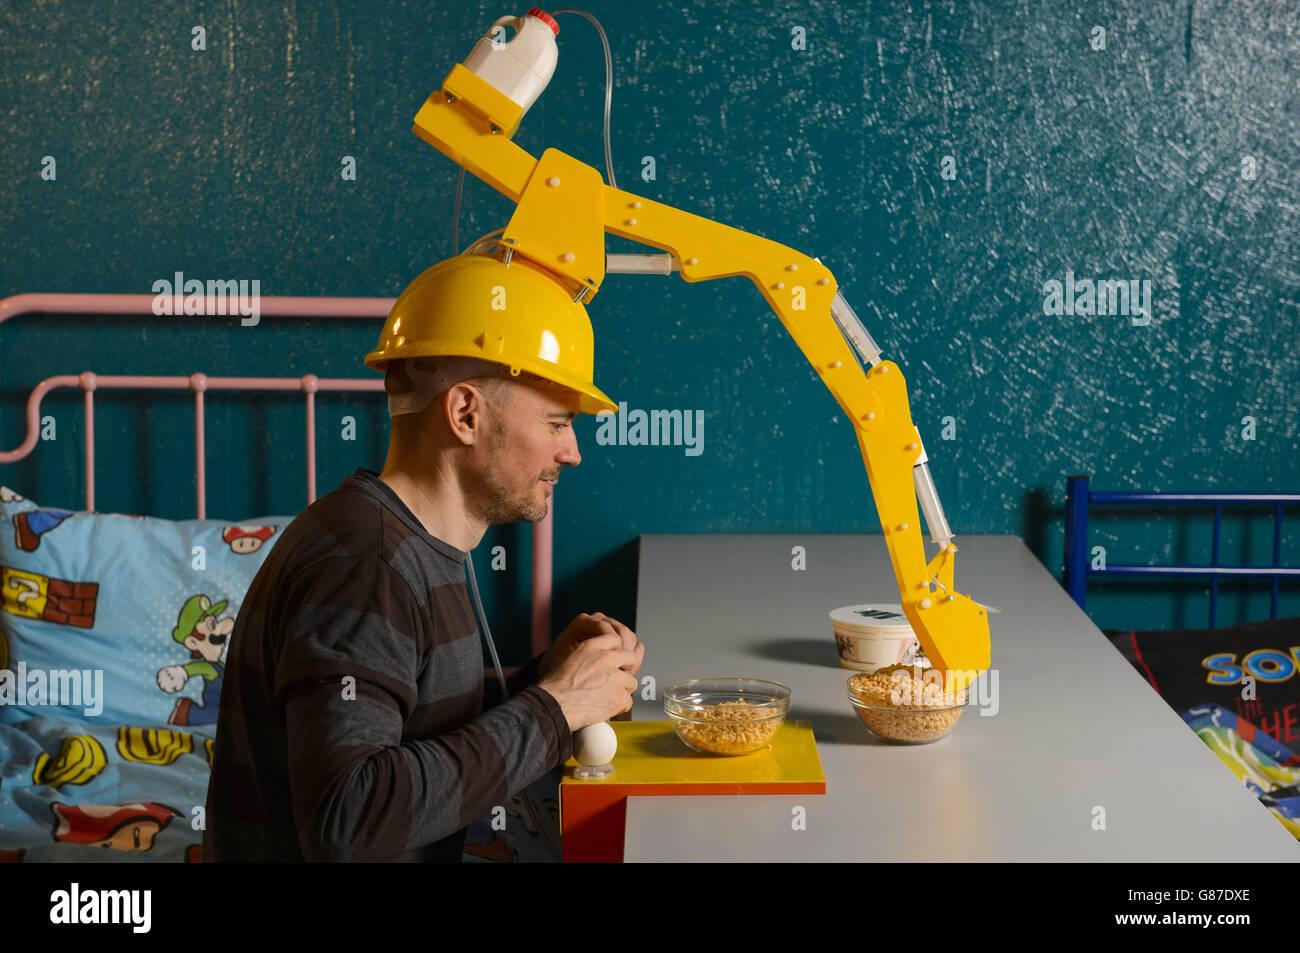 L'artiste et inventeur Dominic Wilcox présente son dernier gadget, le « Crane Head Cereal Serving Device », de la collection Wearable Brek de Kellogg, au Cereal Killer Cafe de Camden, Londres. Banque D'Images